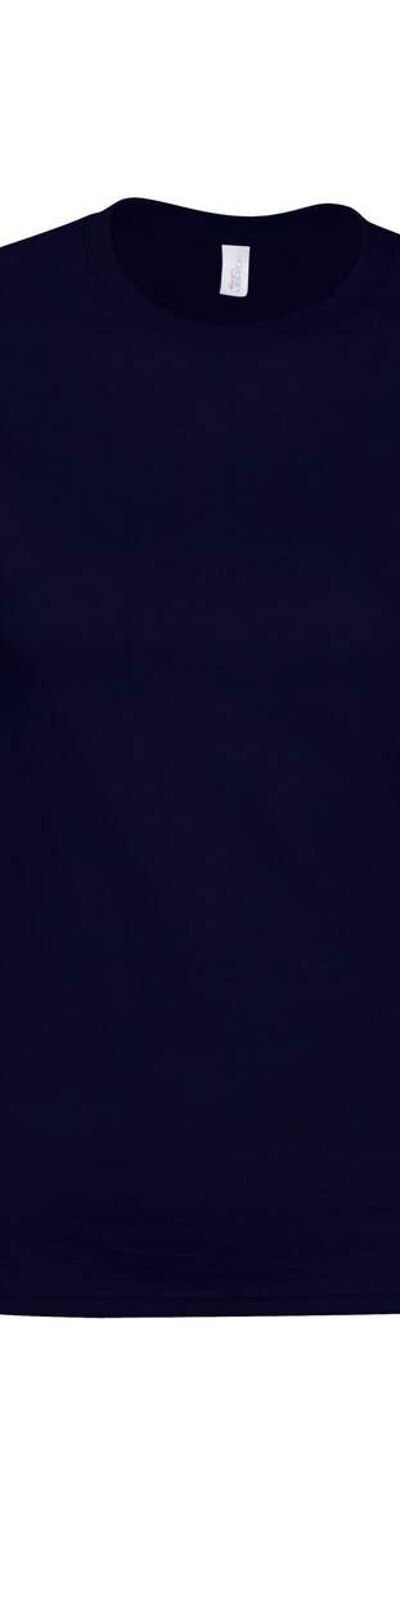 Gildan - T-shirt SOFTSTYLE - Femme (Bleu marine) - UTRW10049